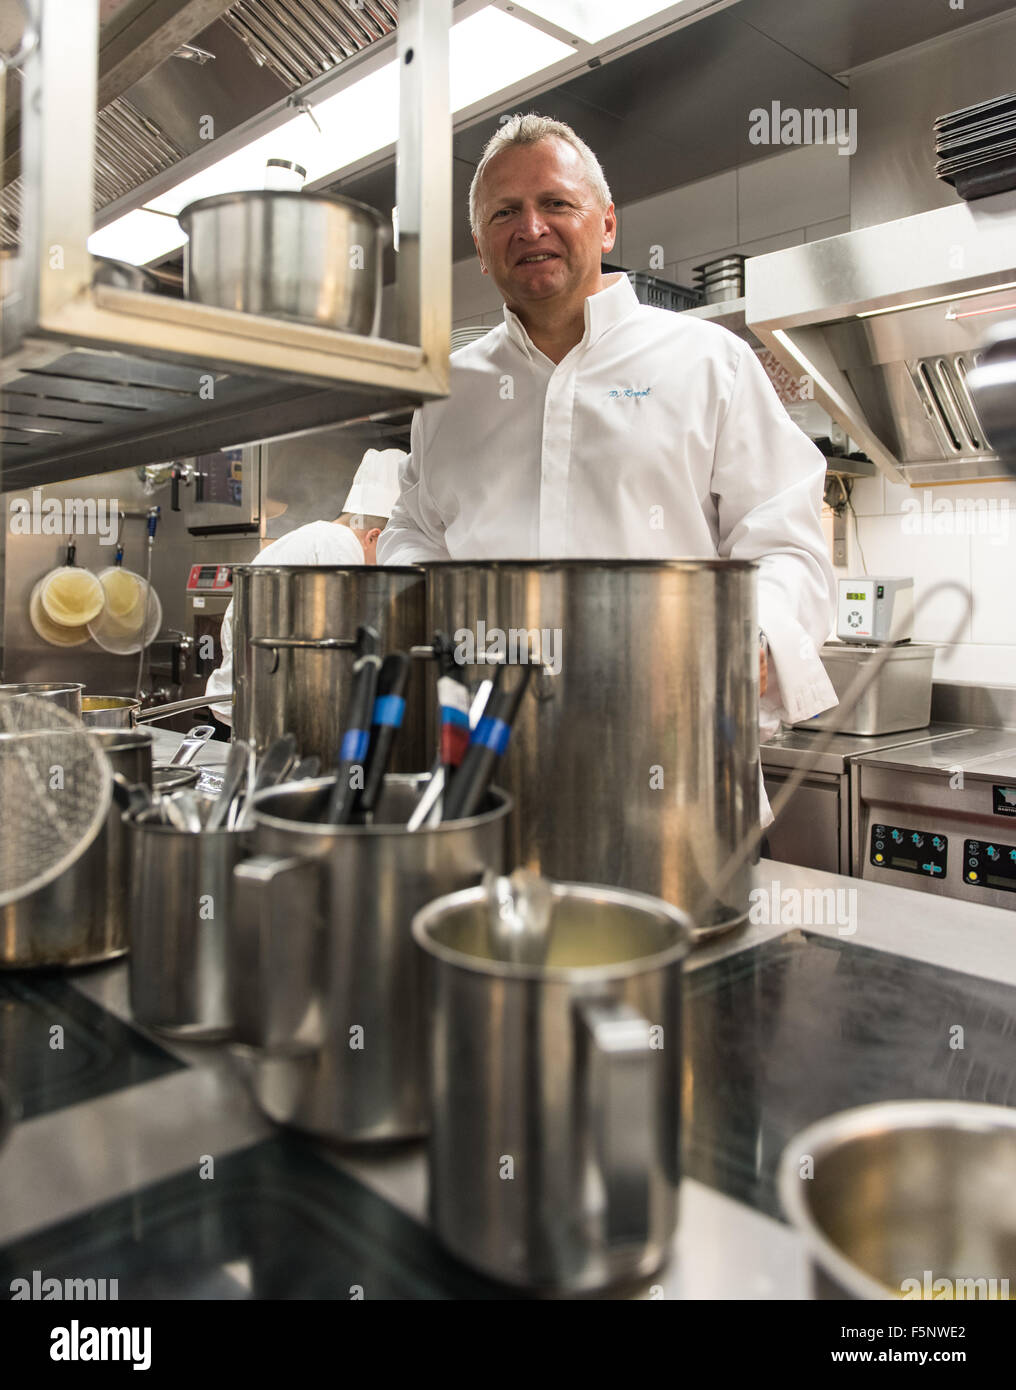 Bâle, Suisse. 06Th Nov, 2015. Peter Knogl Chef du restaurant Cheval Blanc à  l'hôtel Les Trois Rois pose dans la cuisine de son restaurant à Bâle, Suisse,  03 novembre 2015. Knogl a